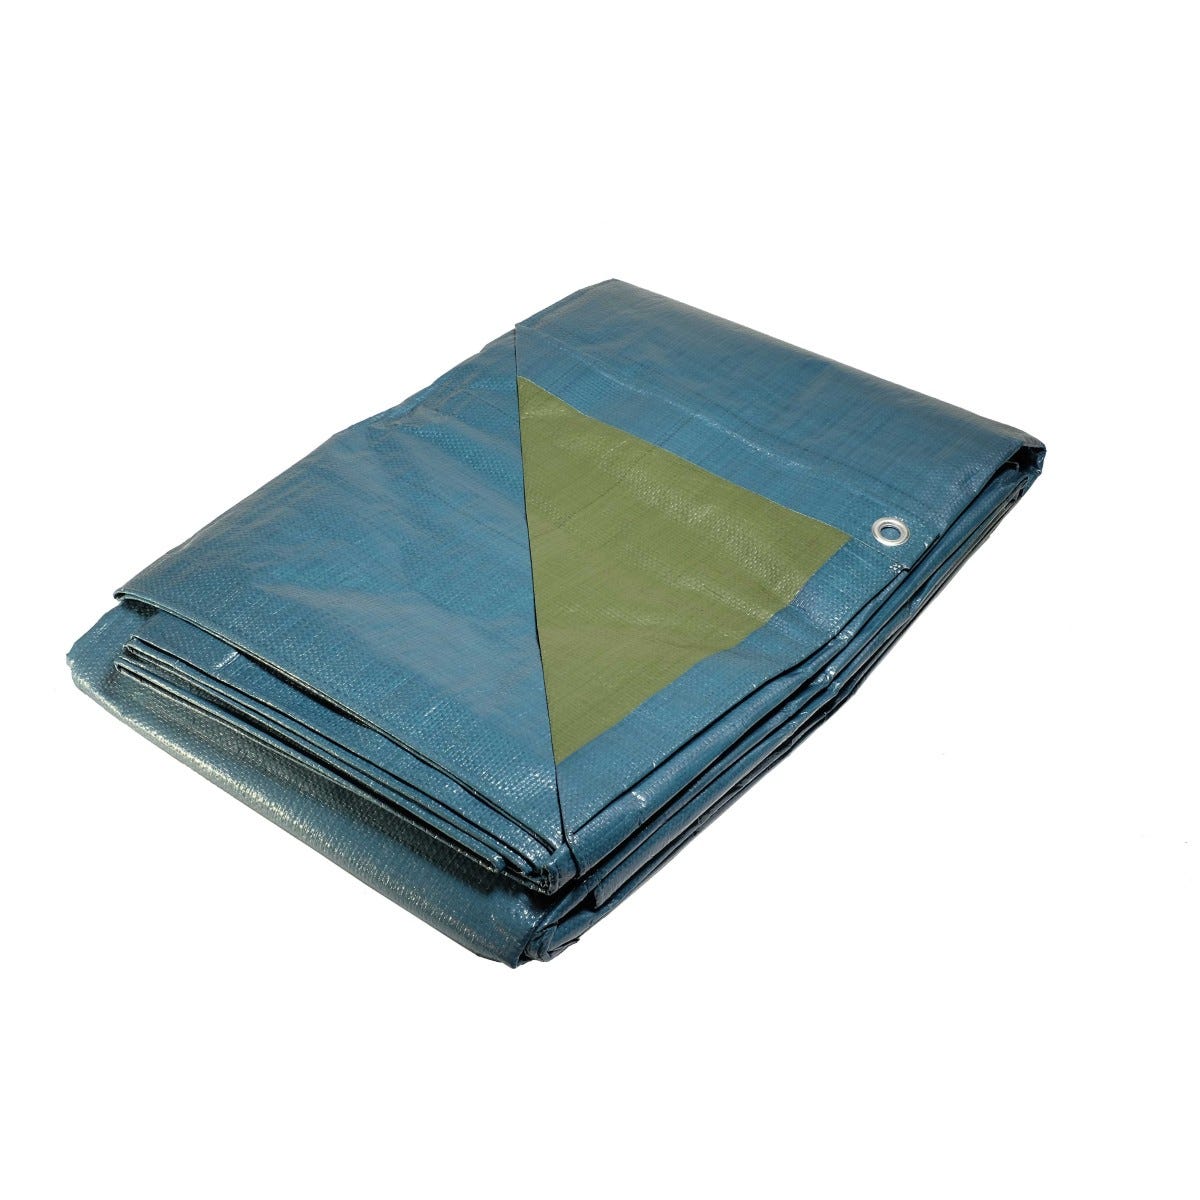 Bâche plastique 10x15 m bleue et verte 150g/m² - bâche de protection polyéthylène 0